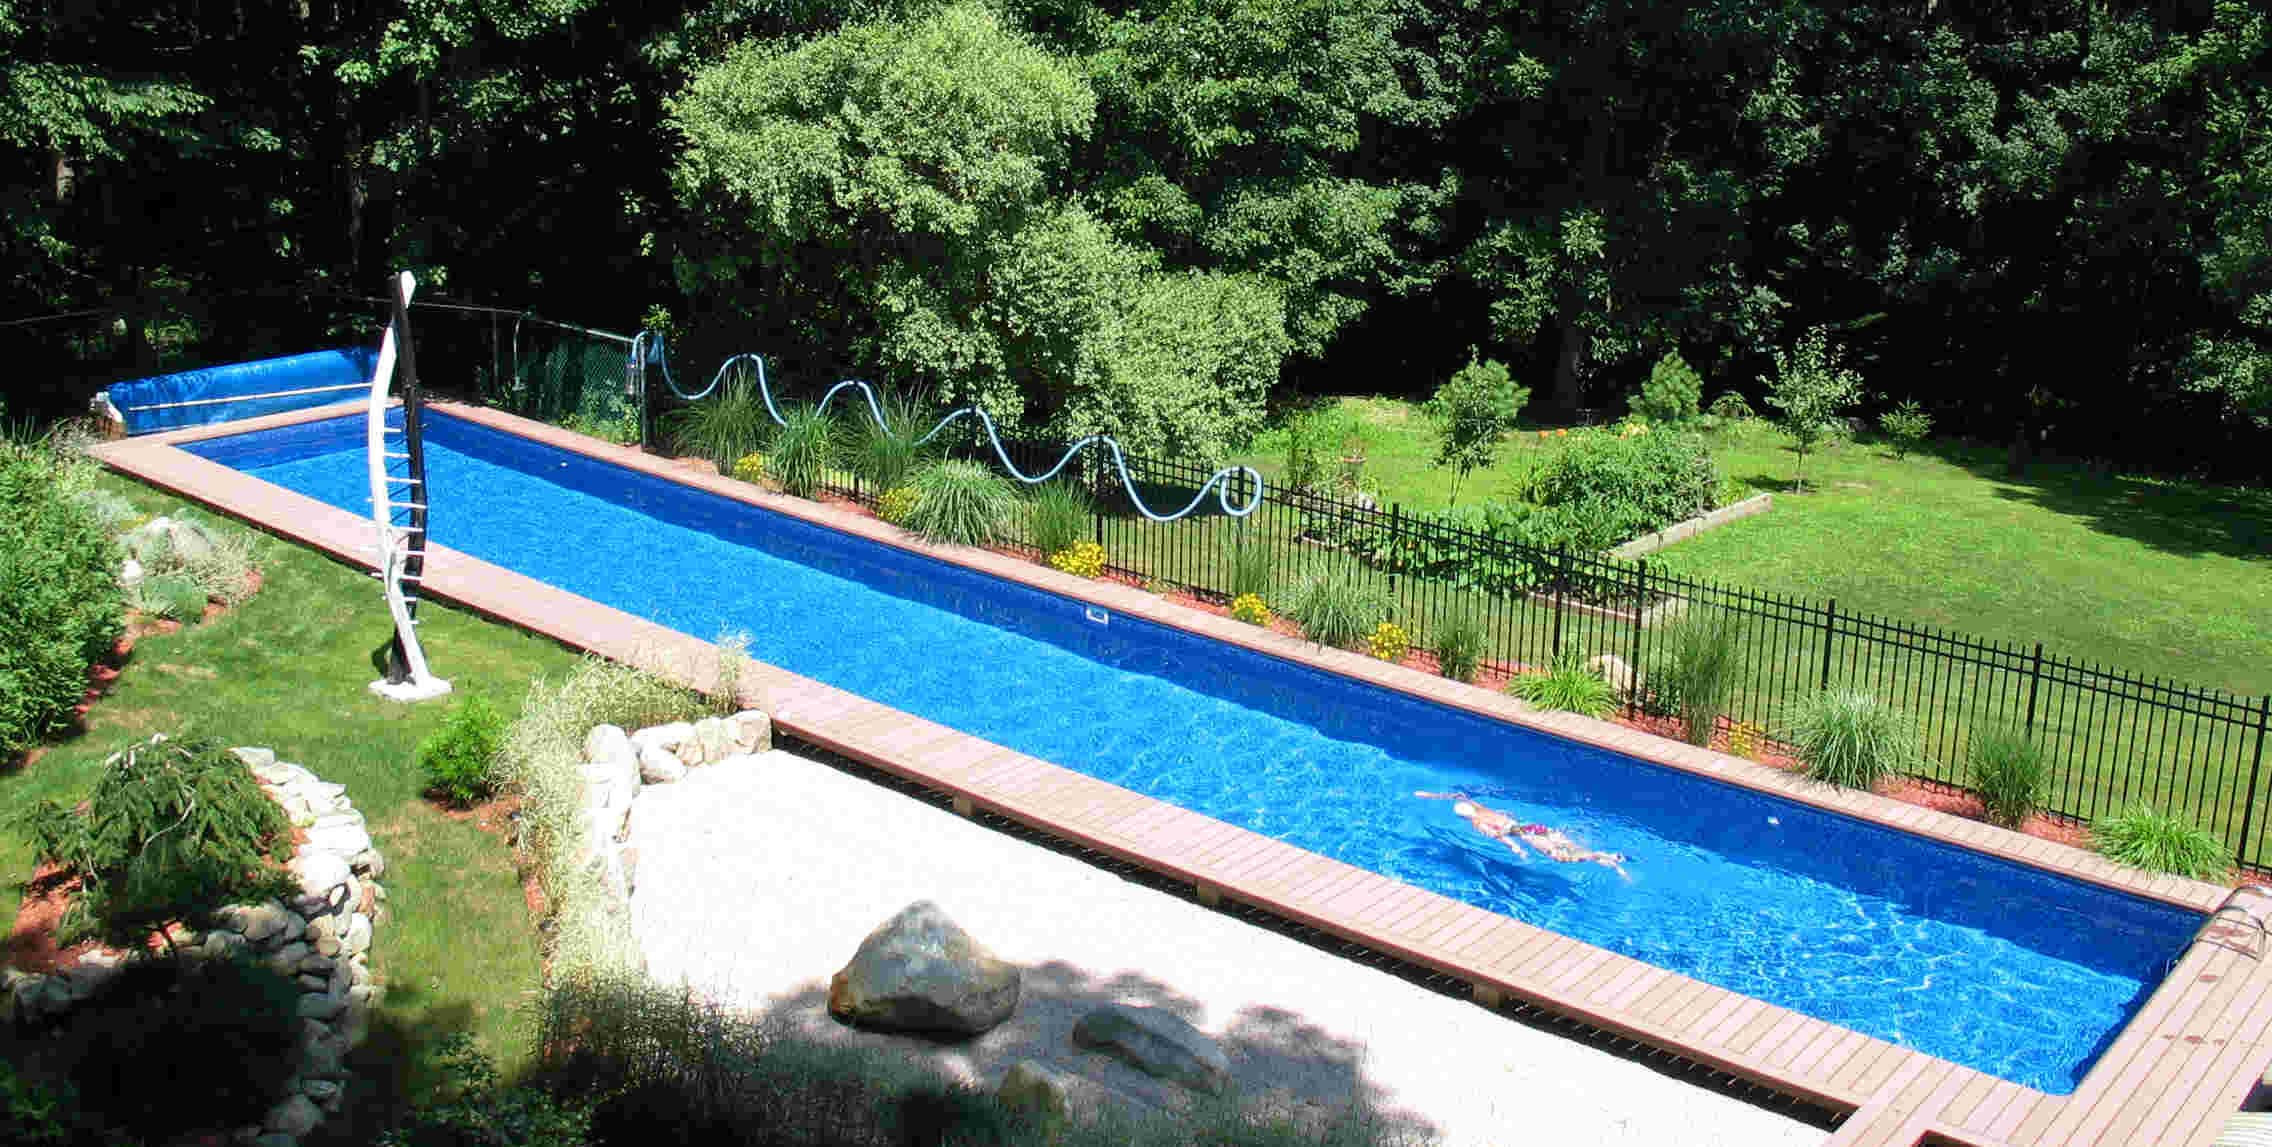 Best ideas about DIY Inground Pool
. Save or Pin DIY Inground Swimming Pool Now.